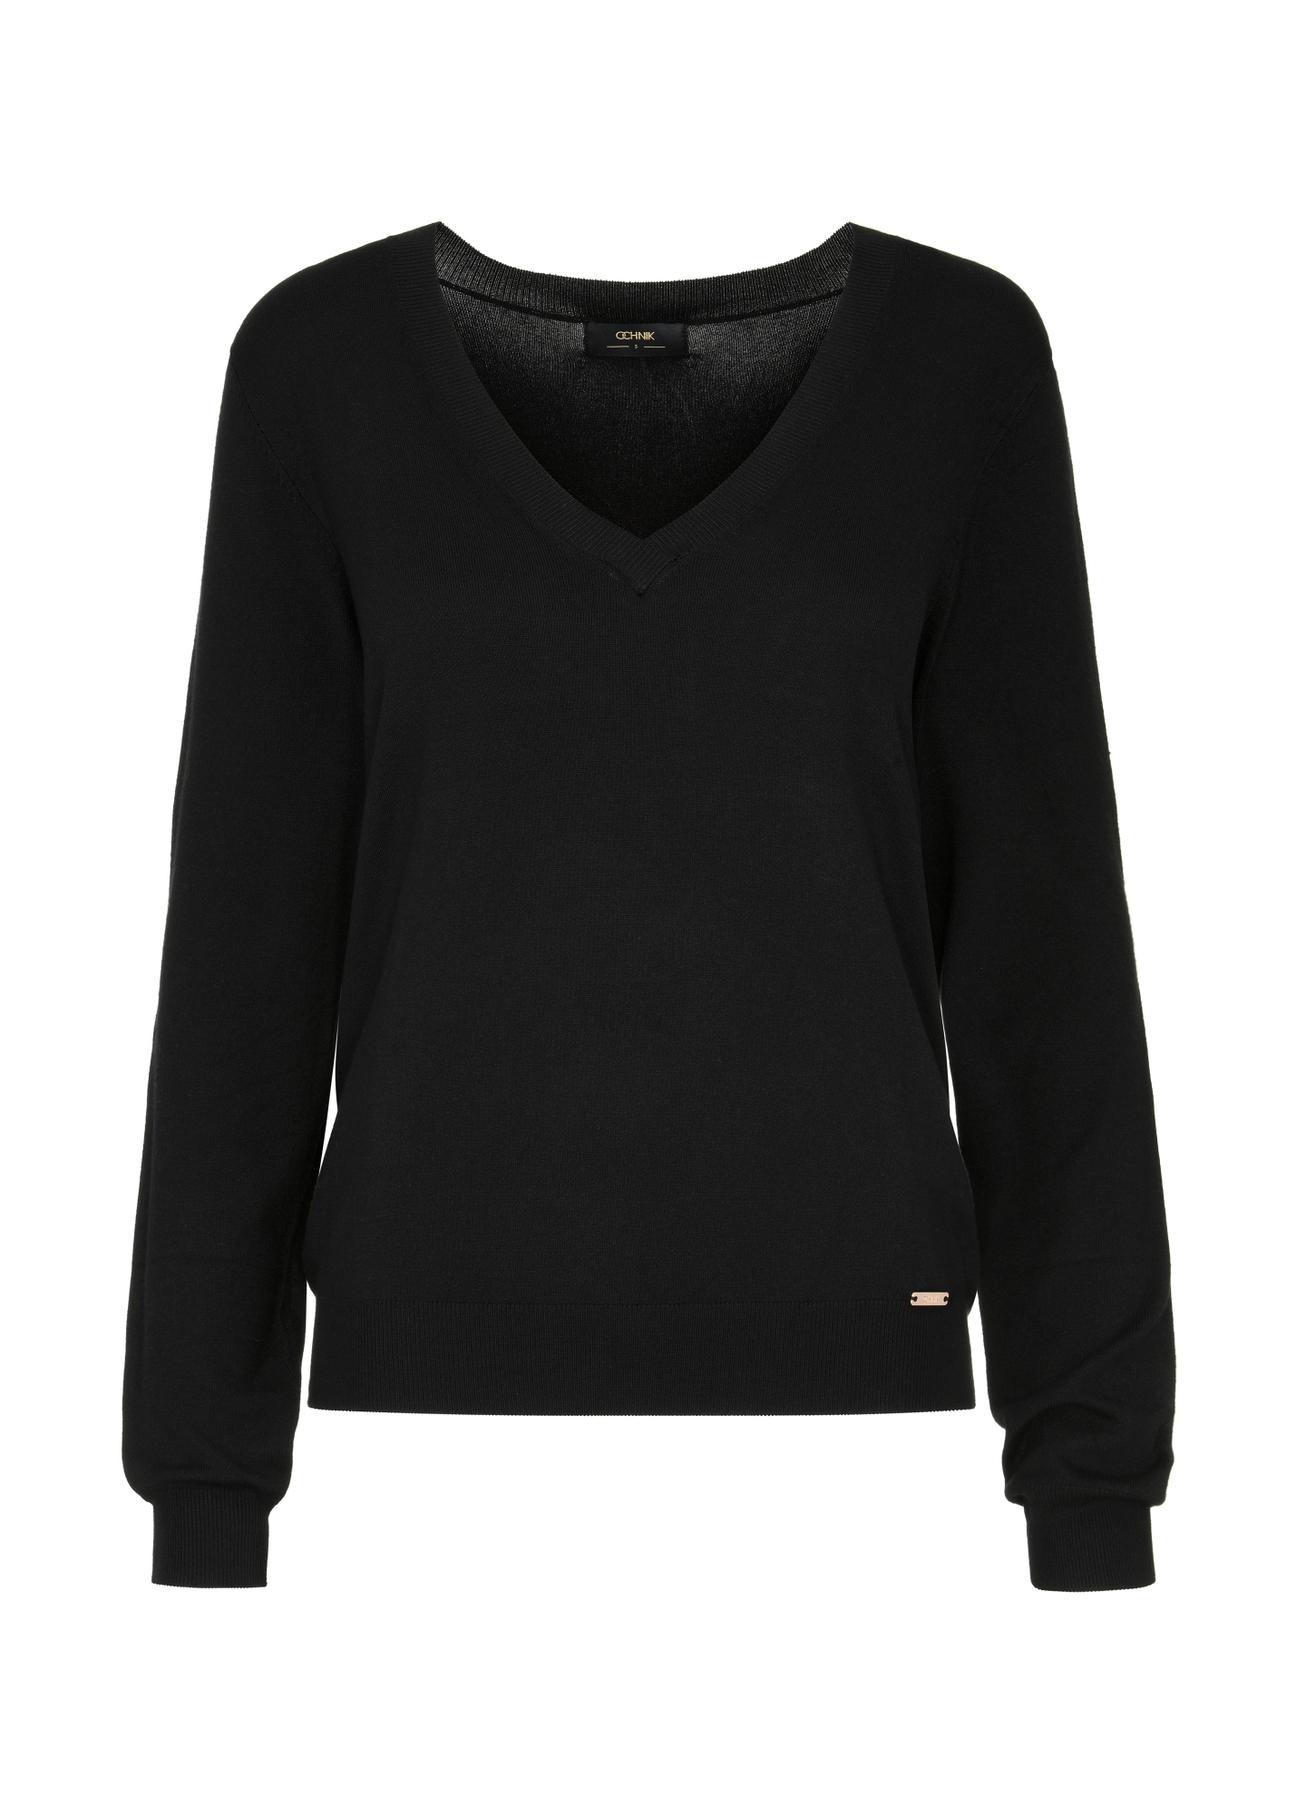 Czarny sweter z dekoltem V-neck SWEDT-0201-99(W24)